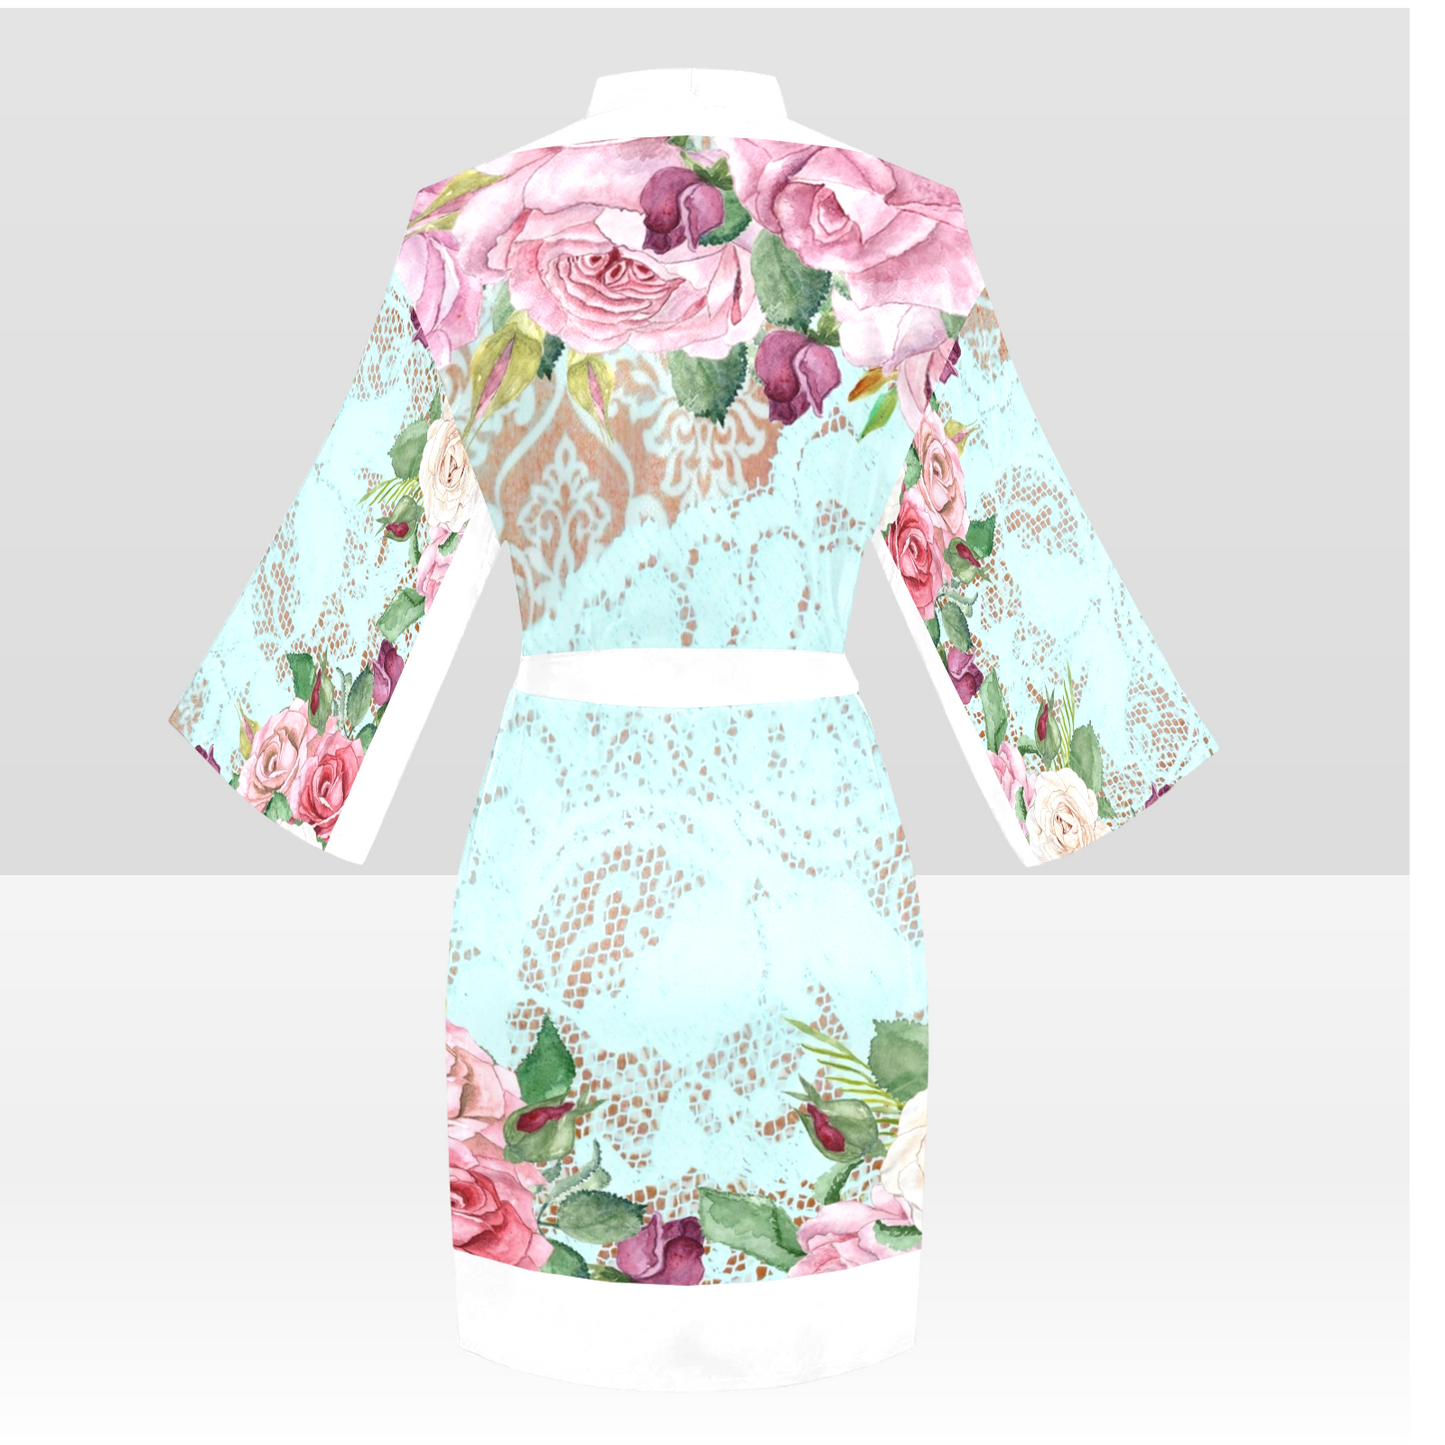 Victorian Lace Kimono Robe, Black or White Trim, Sizes XS to 2XL, Design 24